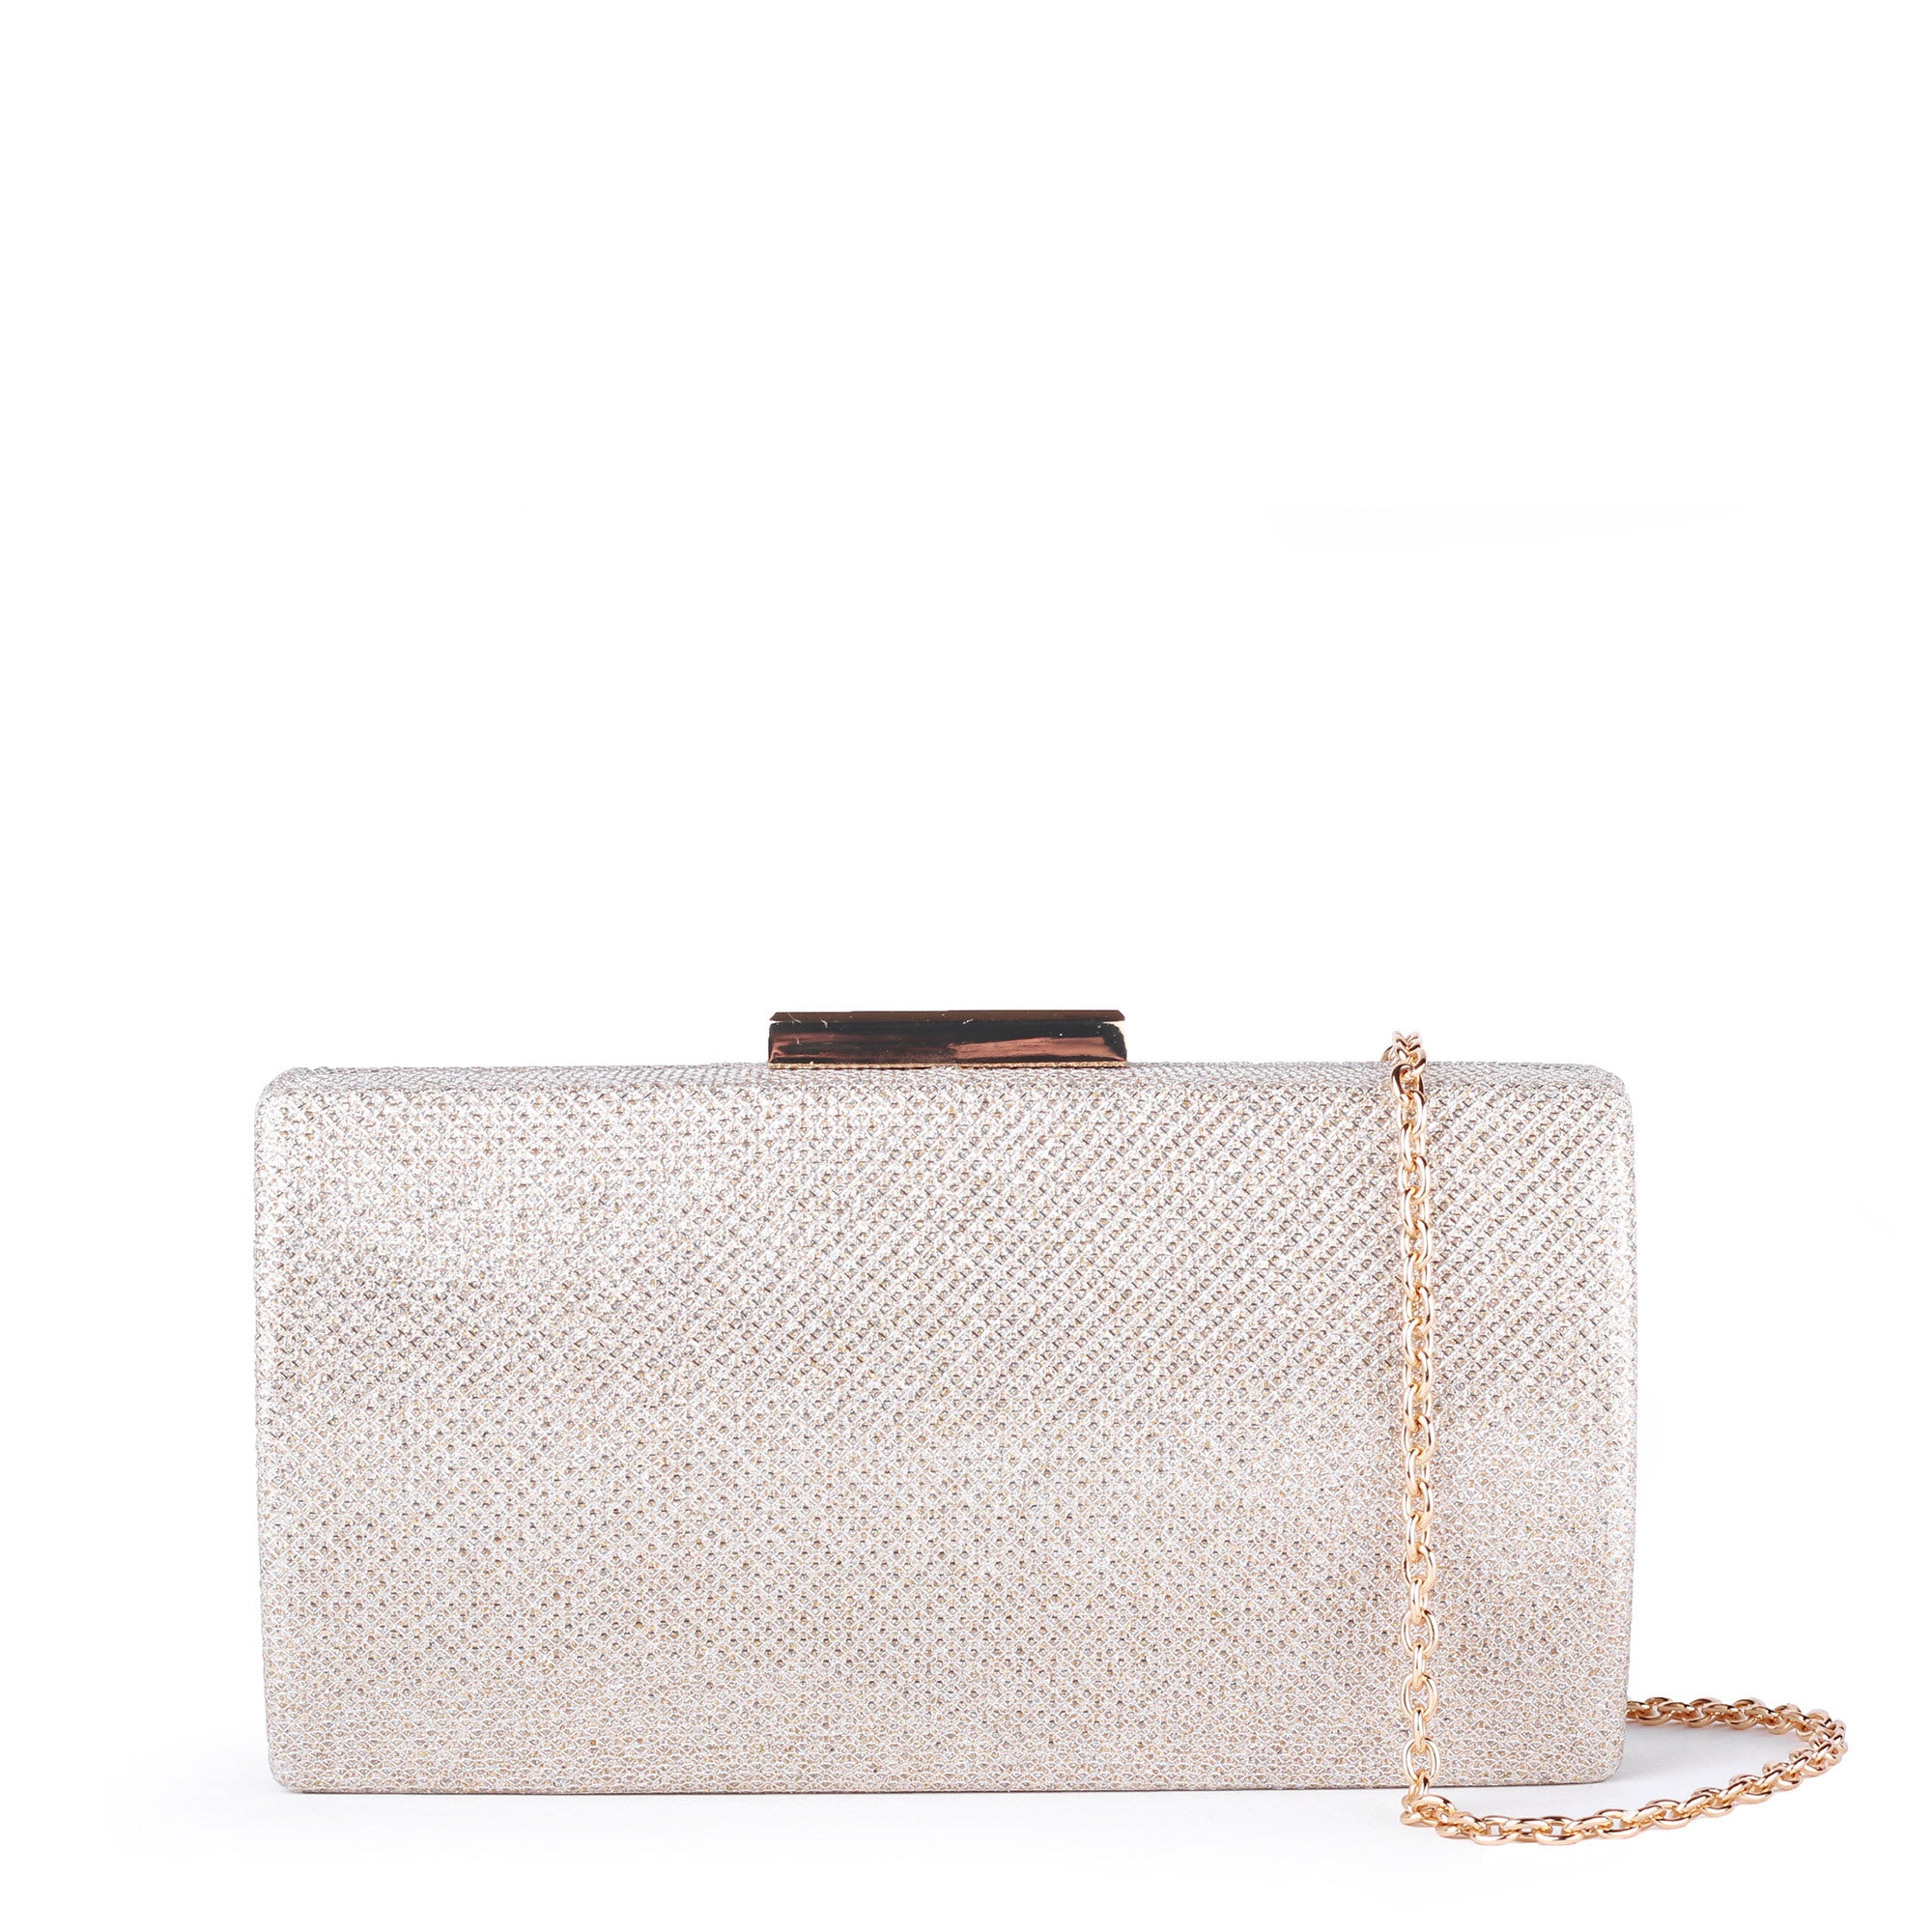 Dionne - Champagne Glitter Box Clutch Bag